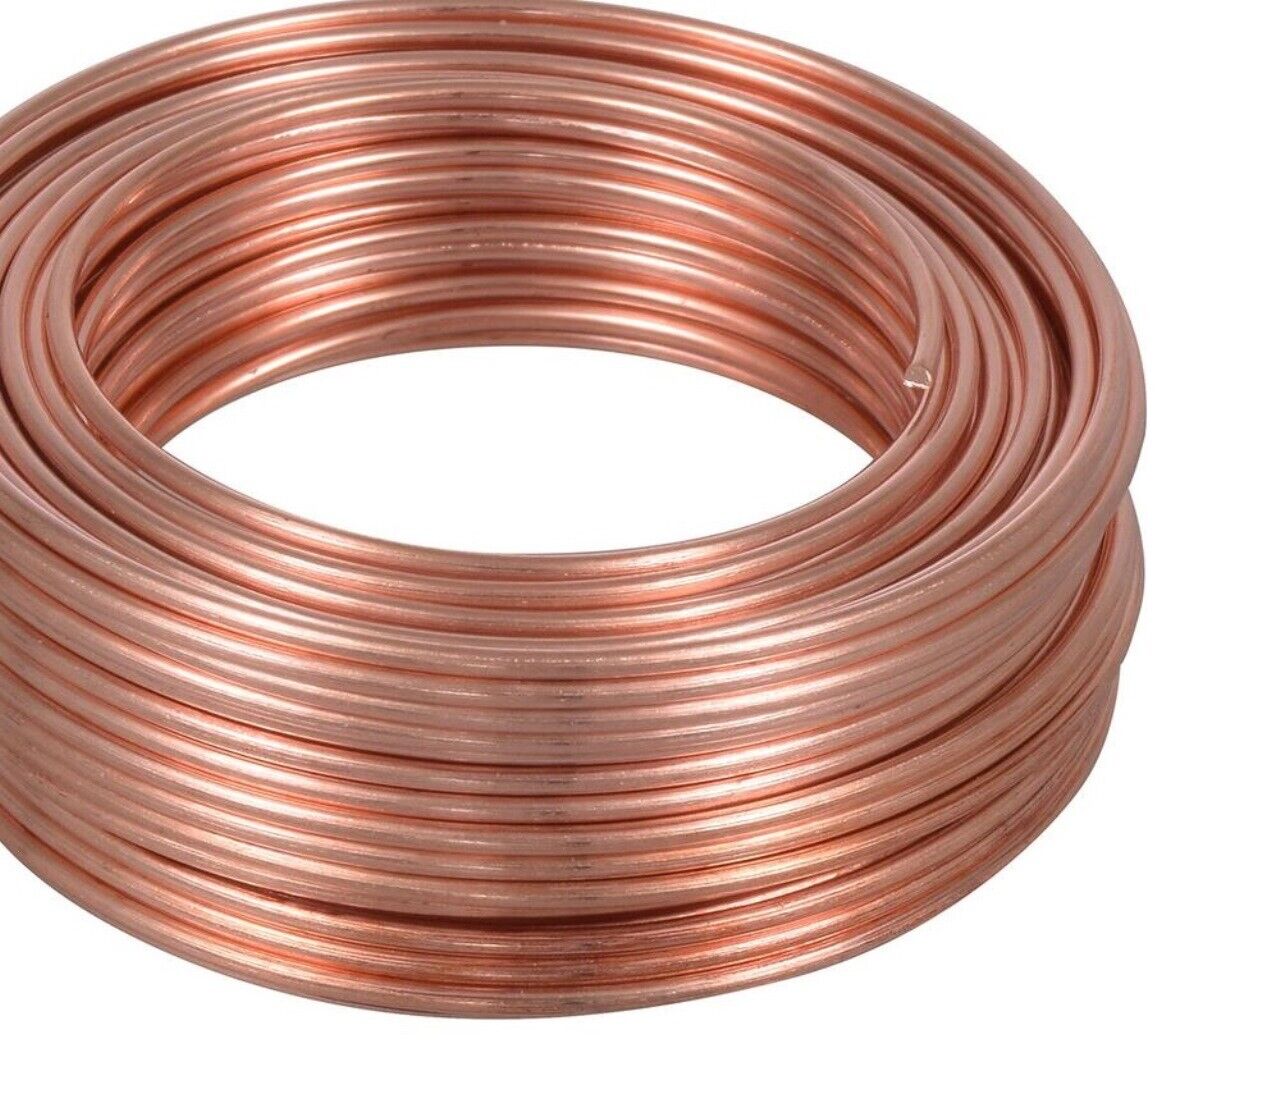 Bare Copper Wire 1/2 Lb./ 8,10,12,14,16,18,20,22,24,26,28,30 Ga (Dead Soft) 